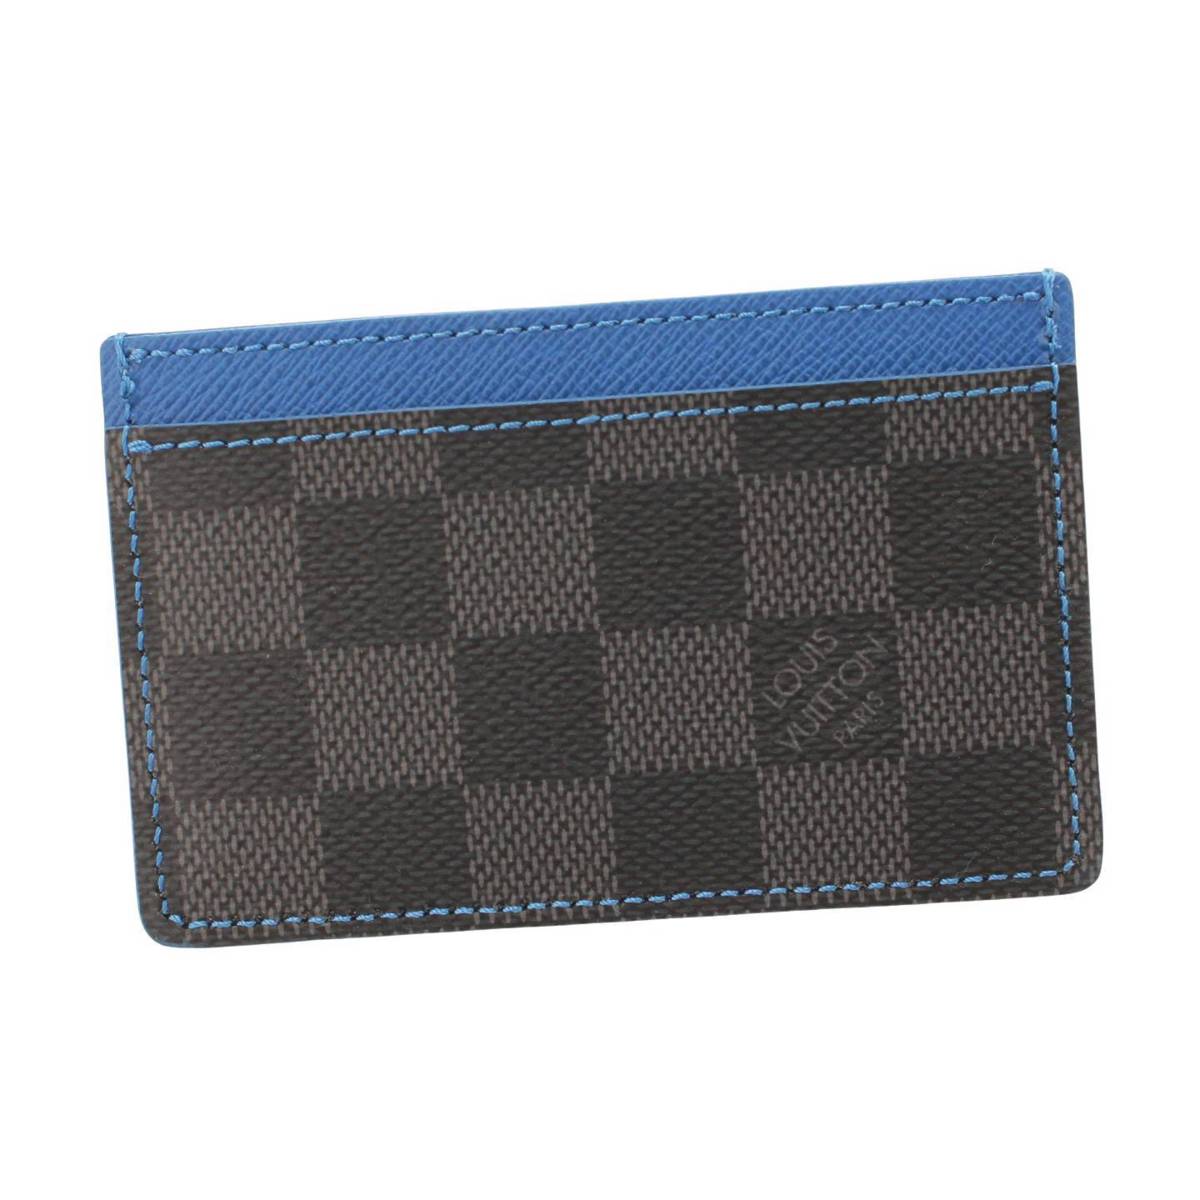 ルイヴィトン(Louis Vuitton) メンズ ダミエグラフィット ポルトカルトサーンプル カードケース パスケース 名刺入れ N64029  ブラック ブルー